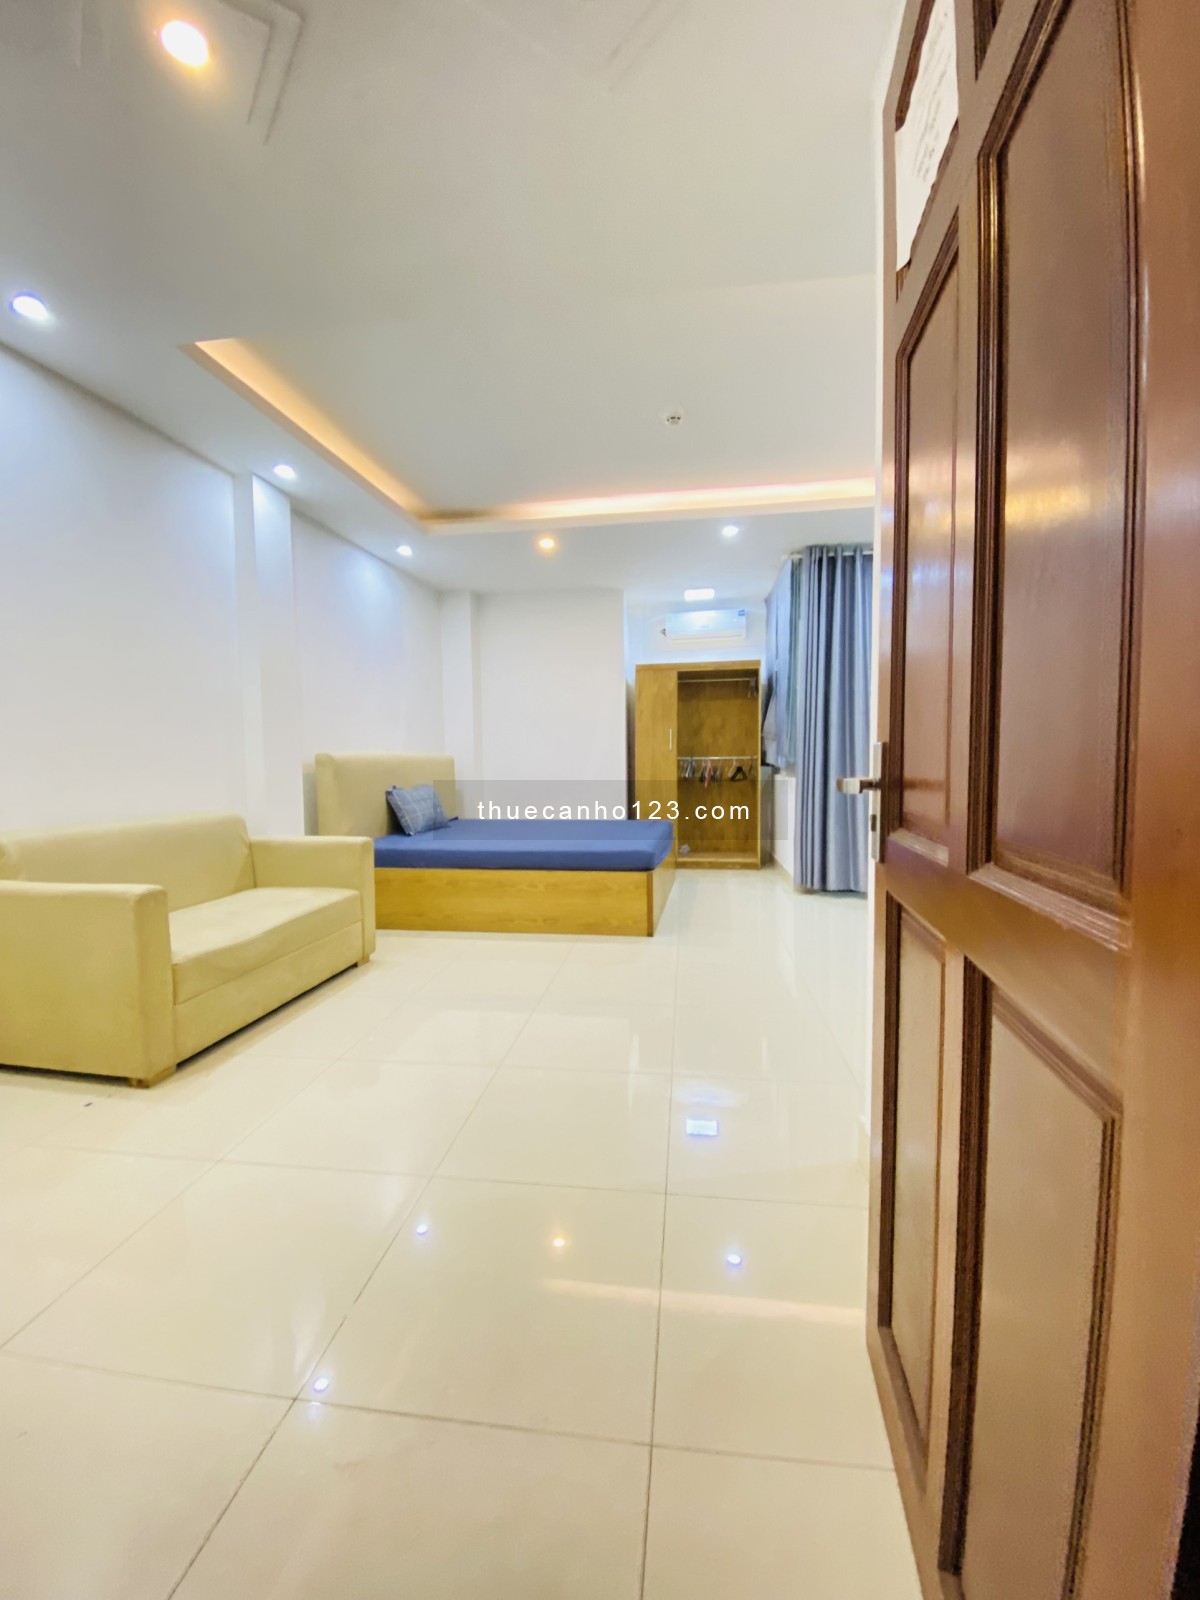 Cho thuê căn hộ dịch vụ full nội thất quận Bình Thạnh gần đại học Hutech